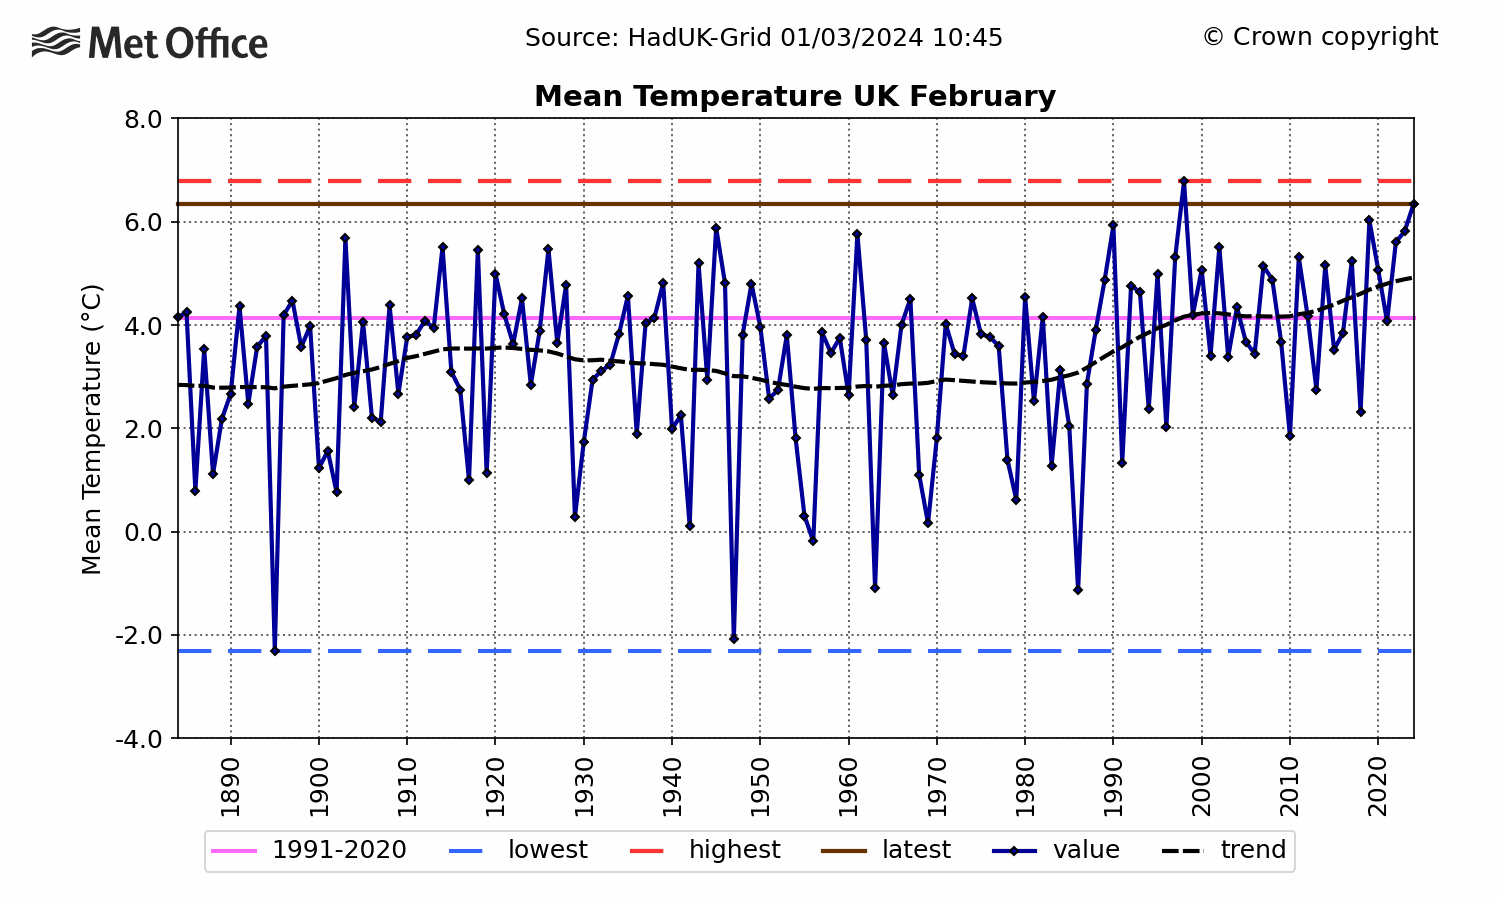 UK Mean temperature - February